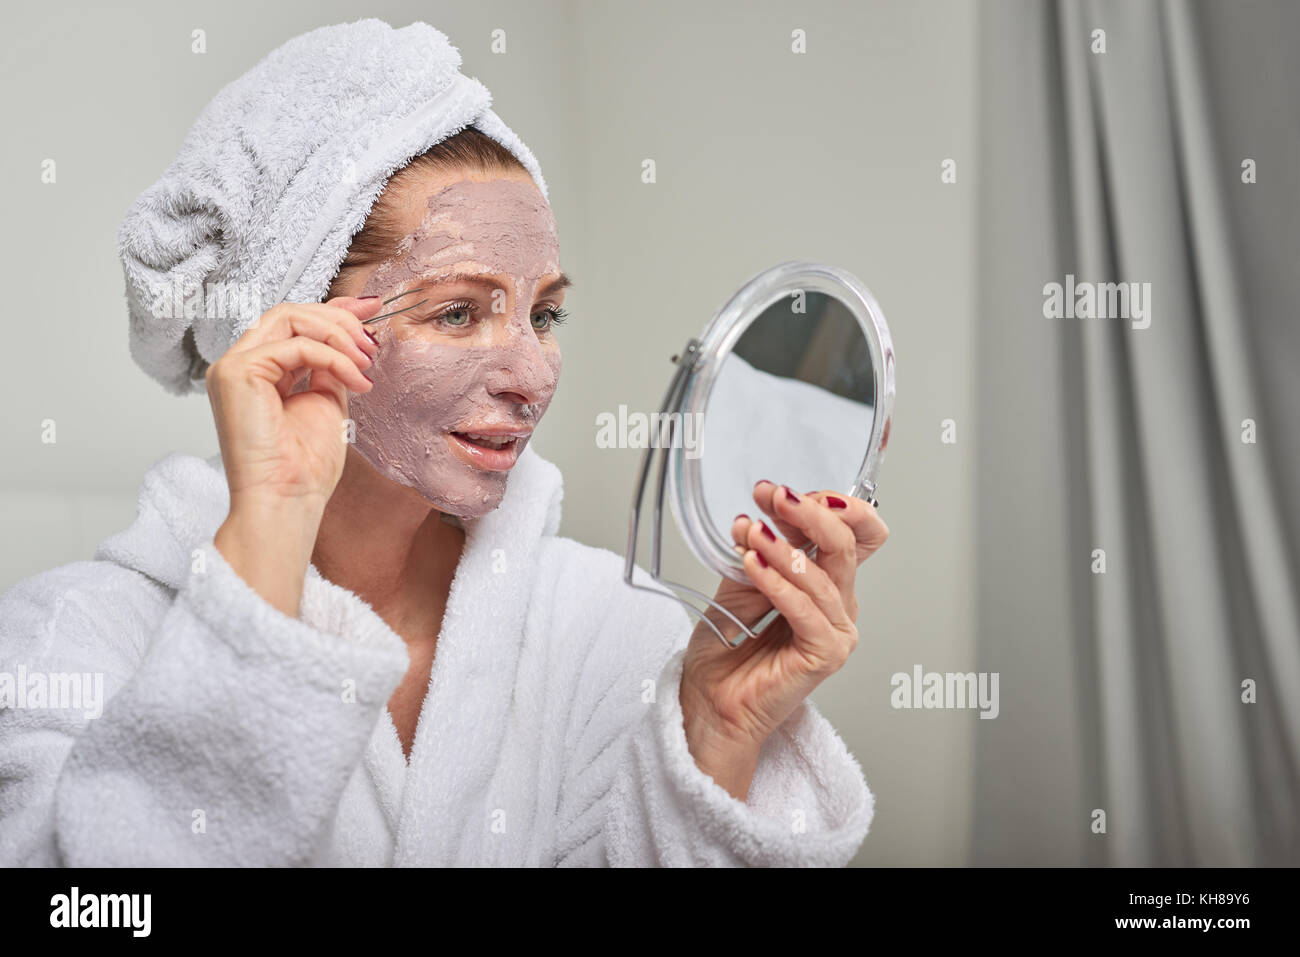 Attraktive Frau das Tragen einer Schutzmaske, Schönheitsbehandlungen, ein Spiegel, wie sie ihre Augenbrauen zupft mit Pinzette Stockfoto